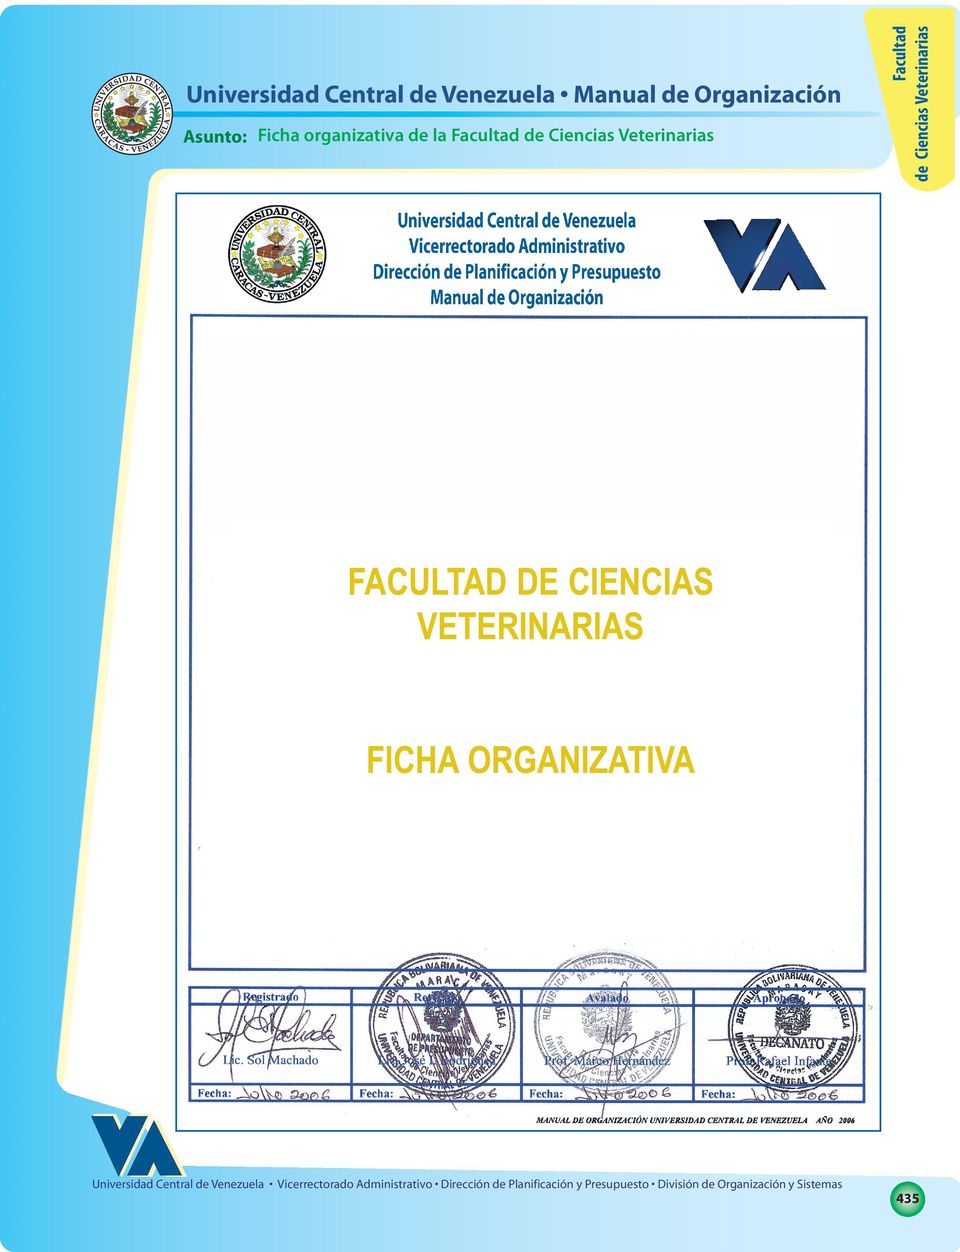 Universidad Central de Venezuela Manual de